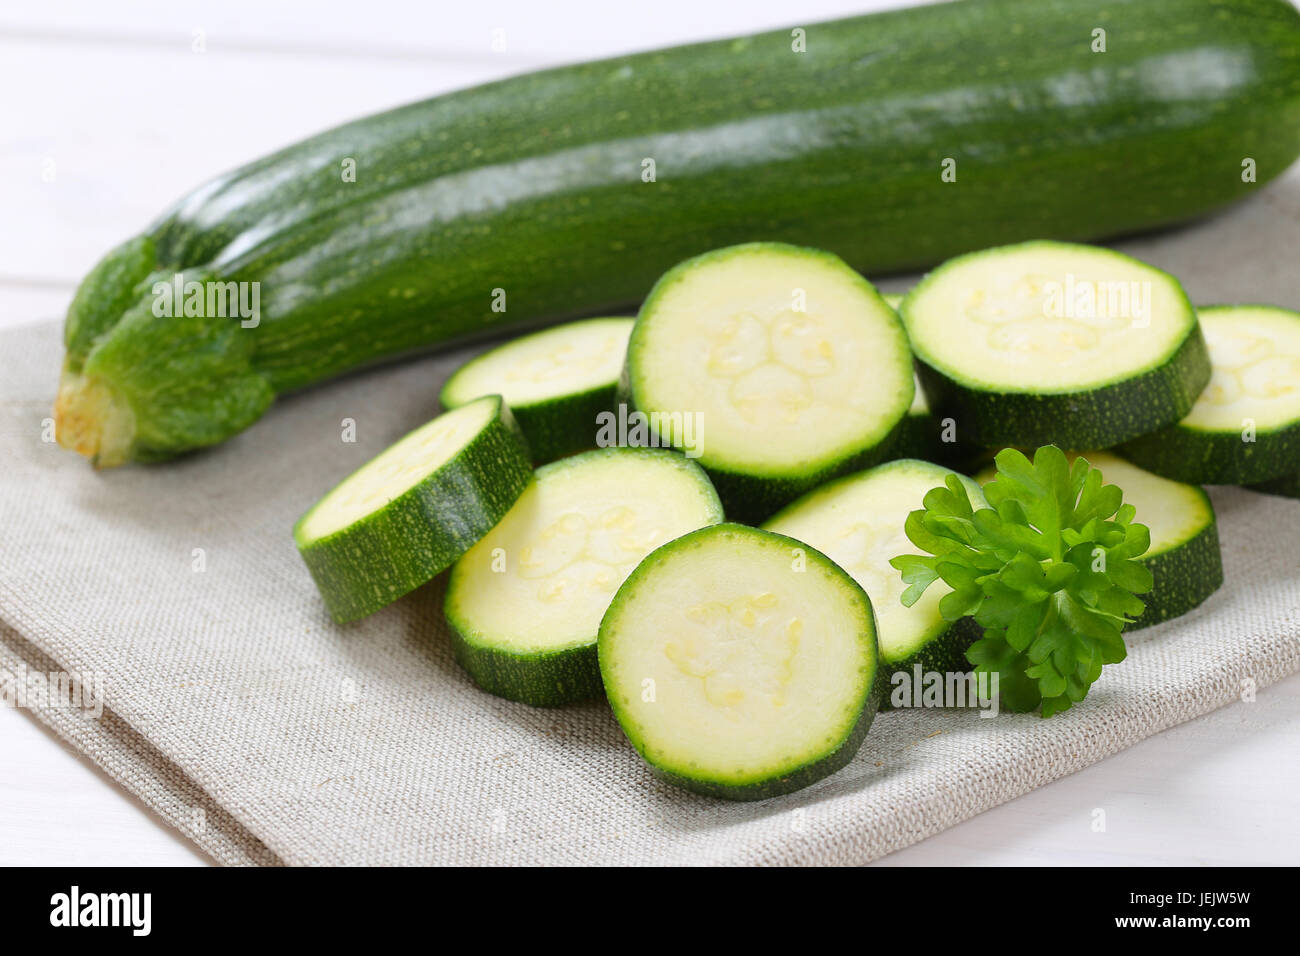 Intero e fette di zucchine verde sul posto beige mat - close up Foto Stock